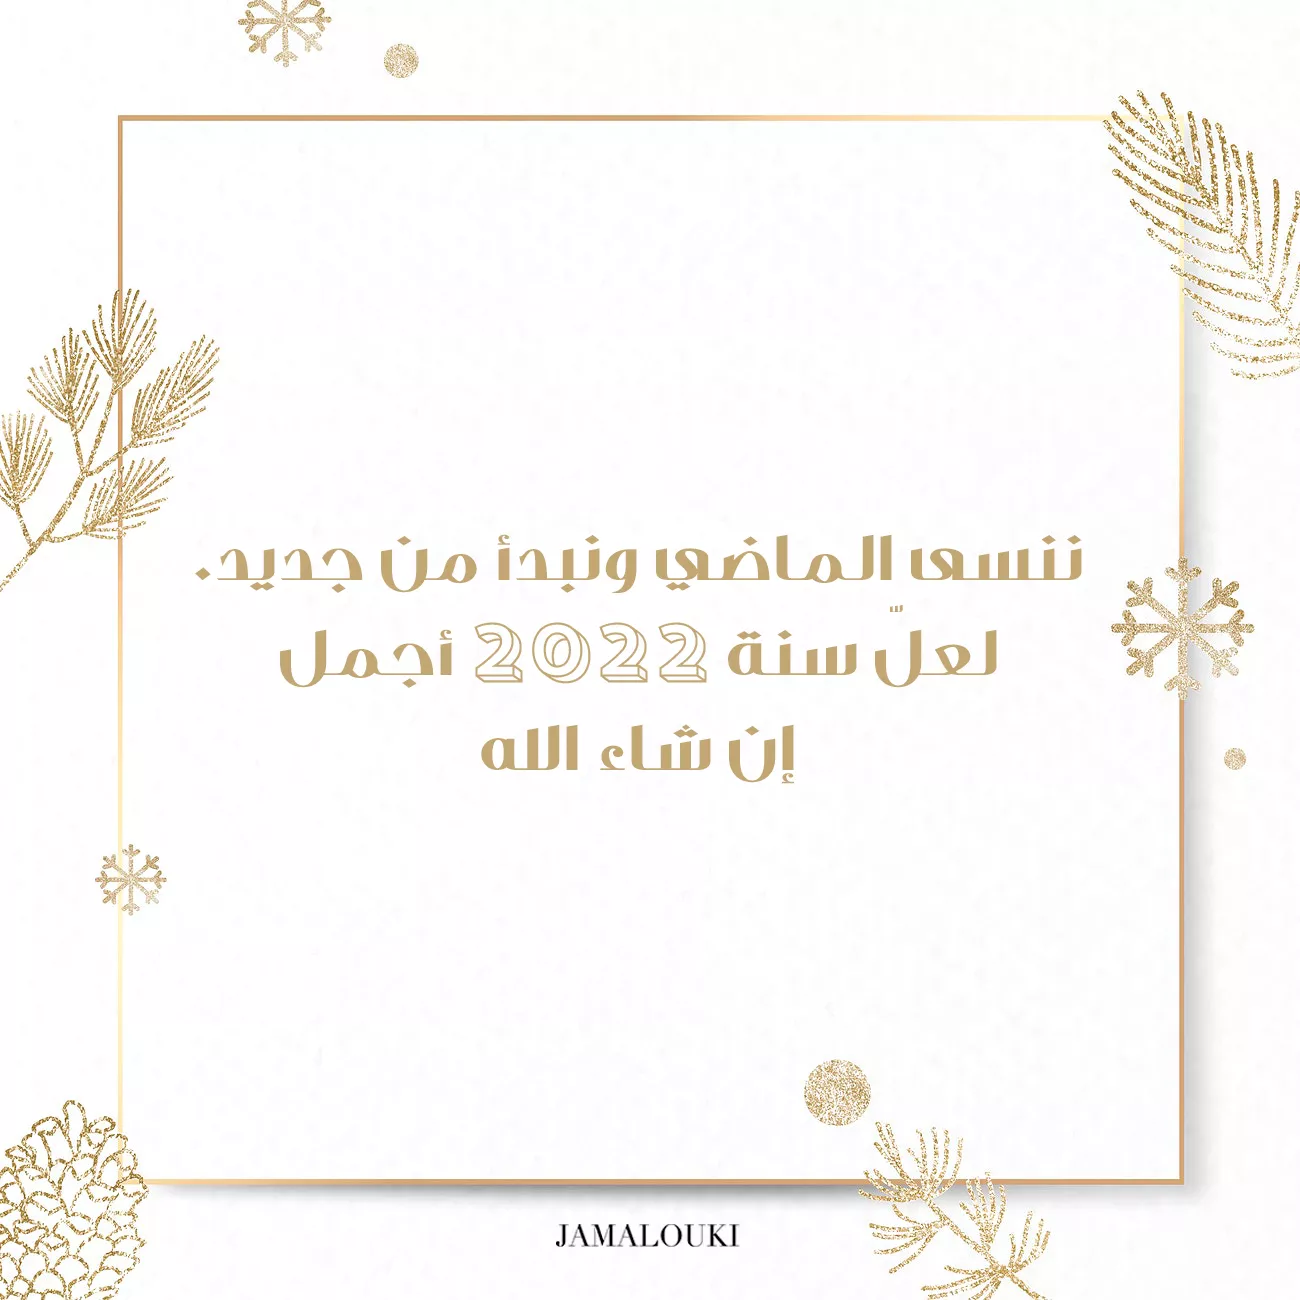 ثيمات العيد حصرية من جمالكِ... ارسليها لتعايدي بها الجميع في السنة الجديدة 2022